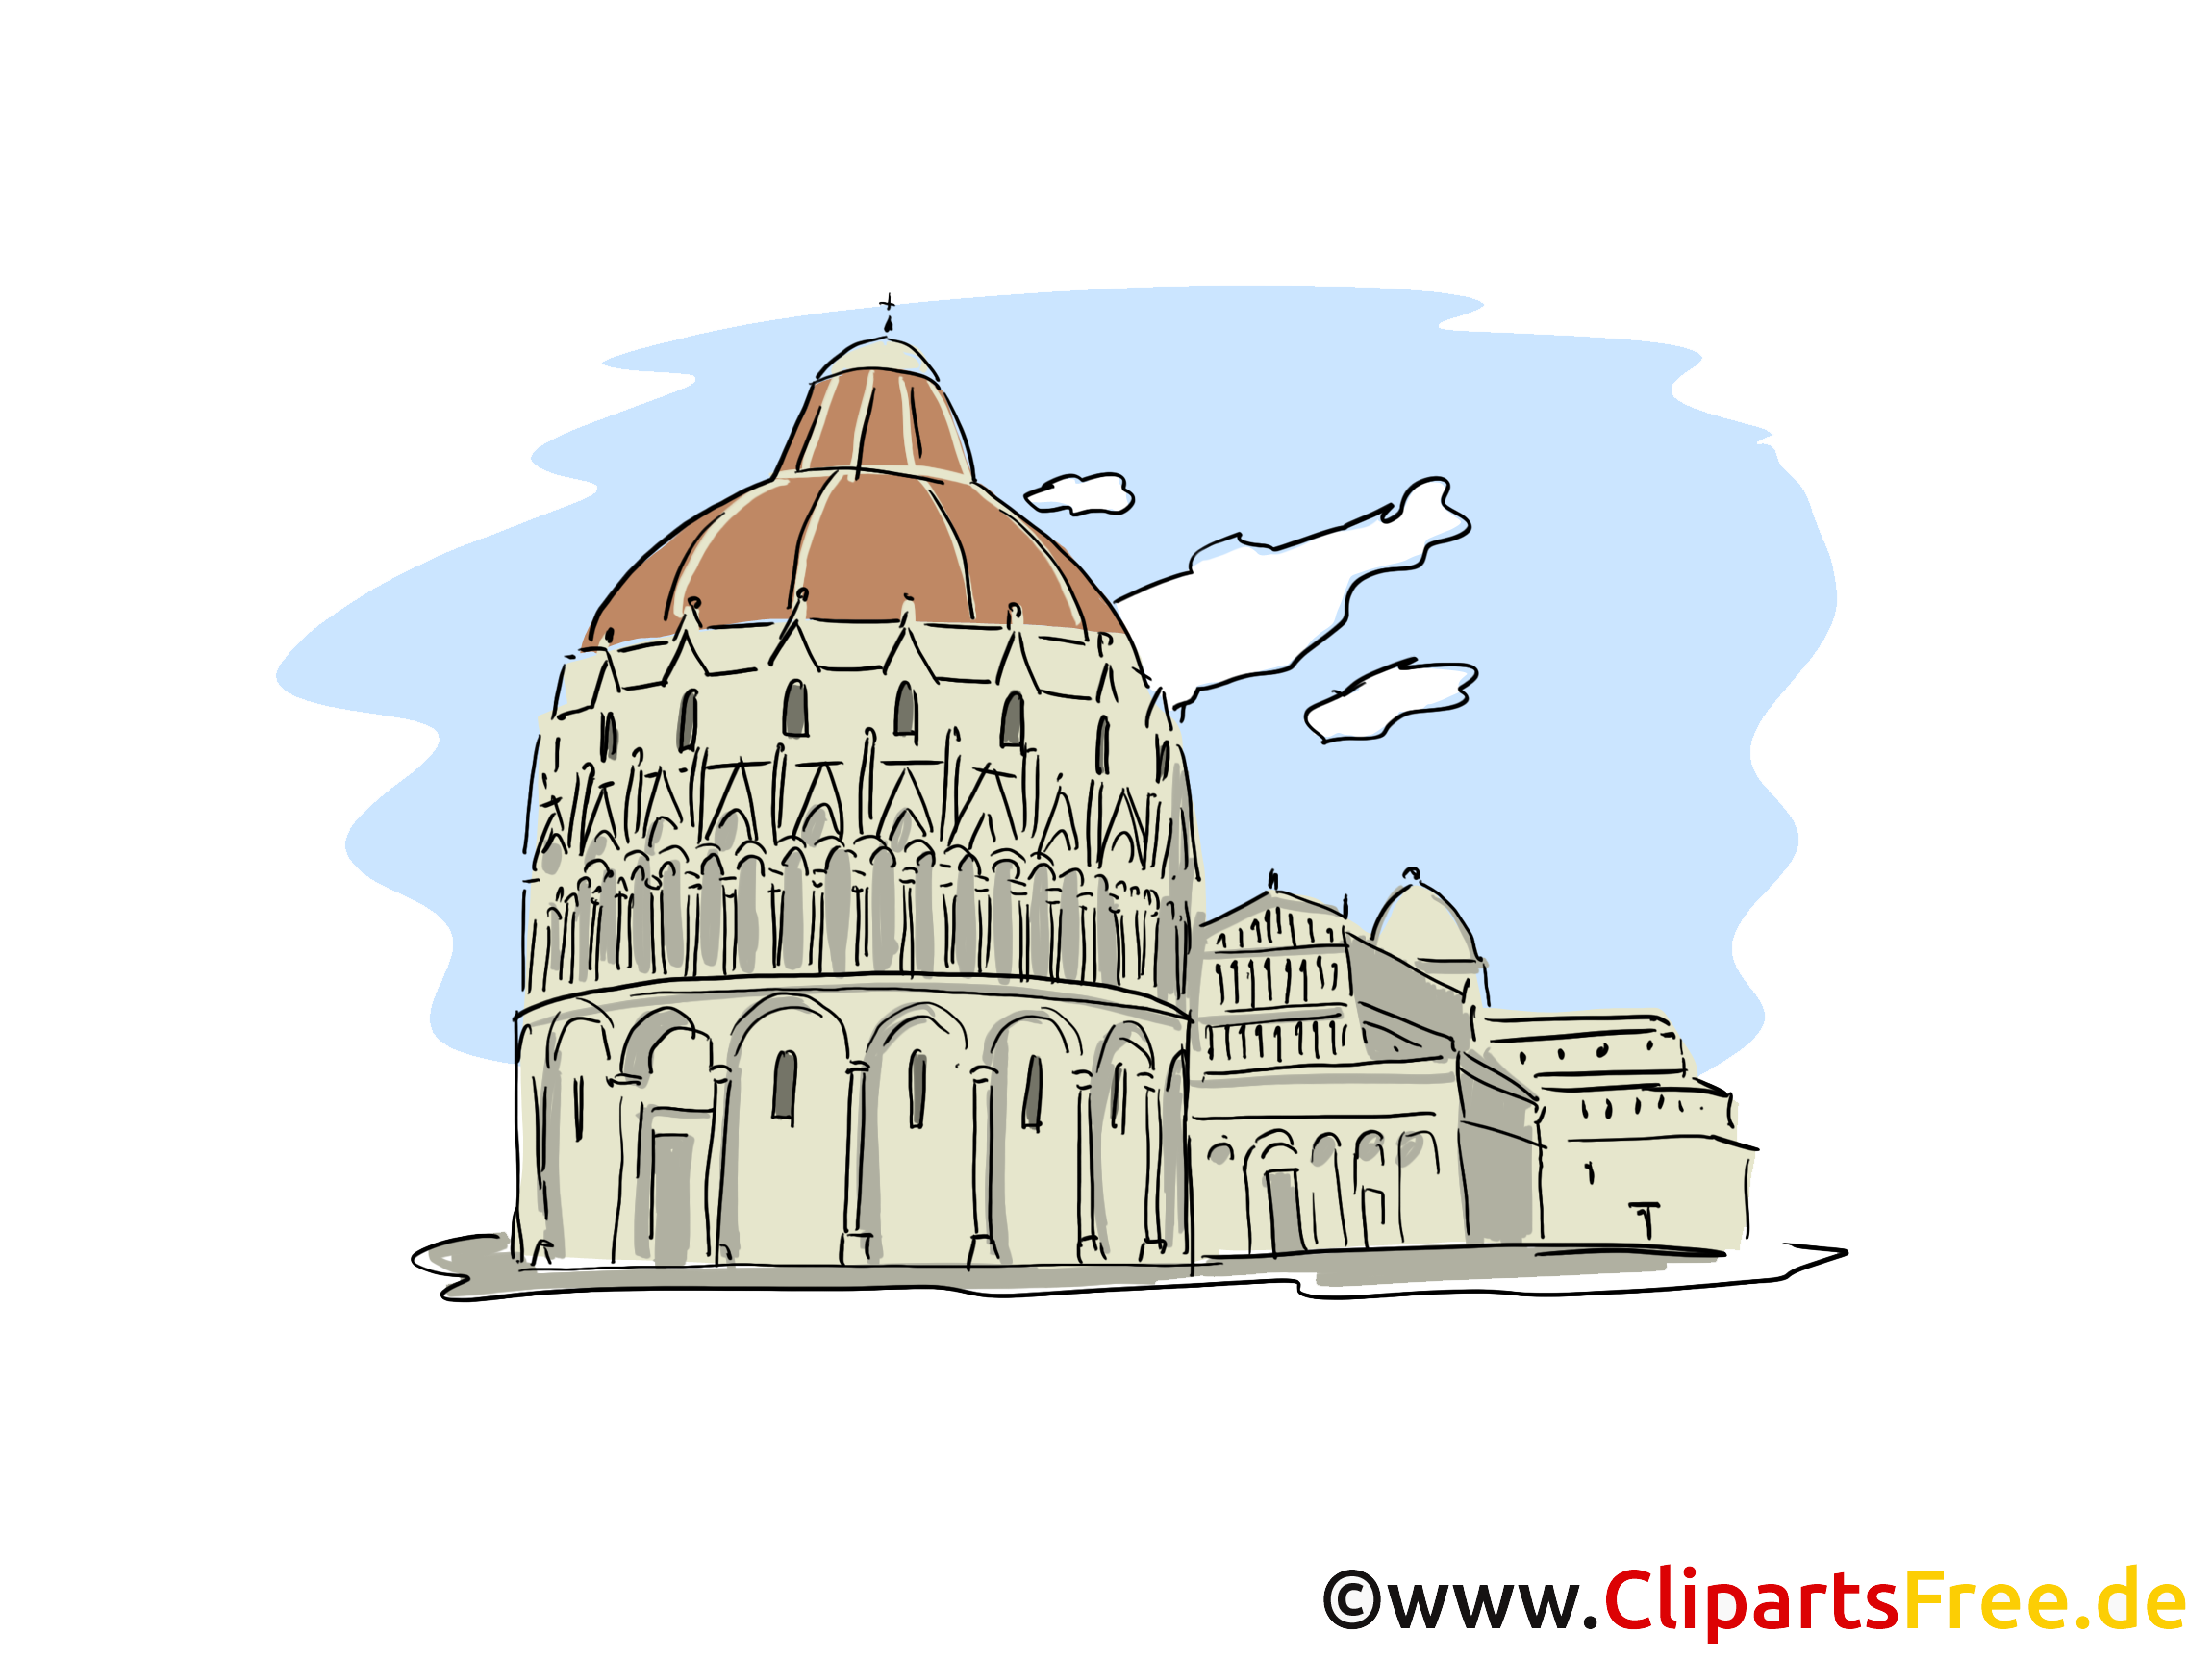 Italie dessin gratuit - Cathédrale image gratuite